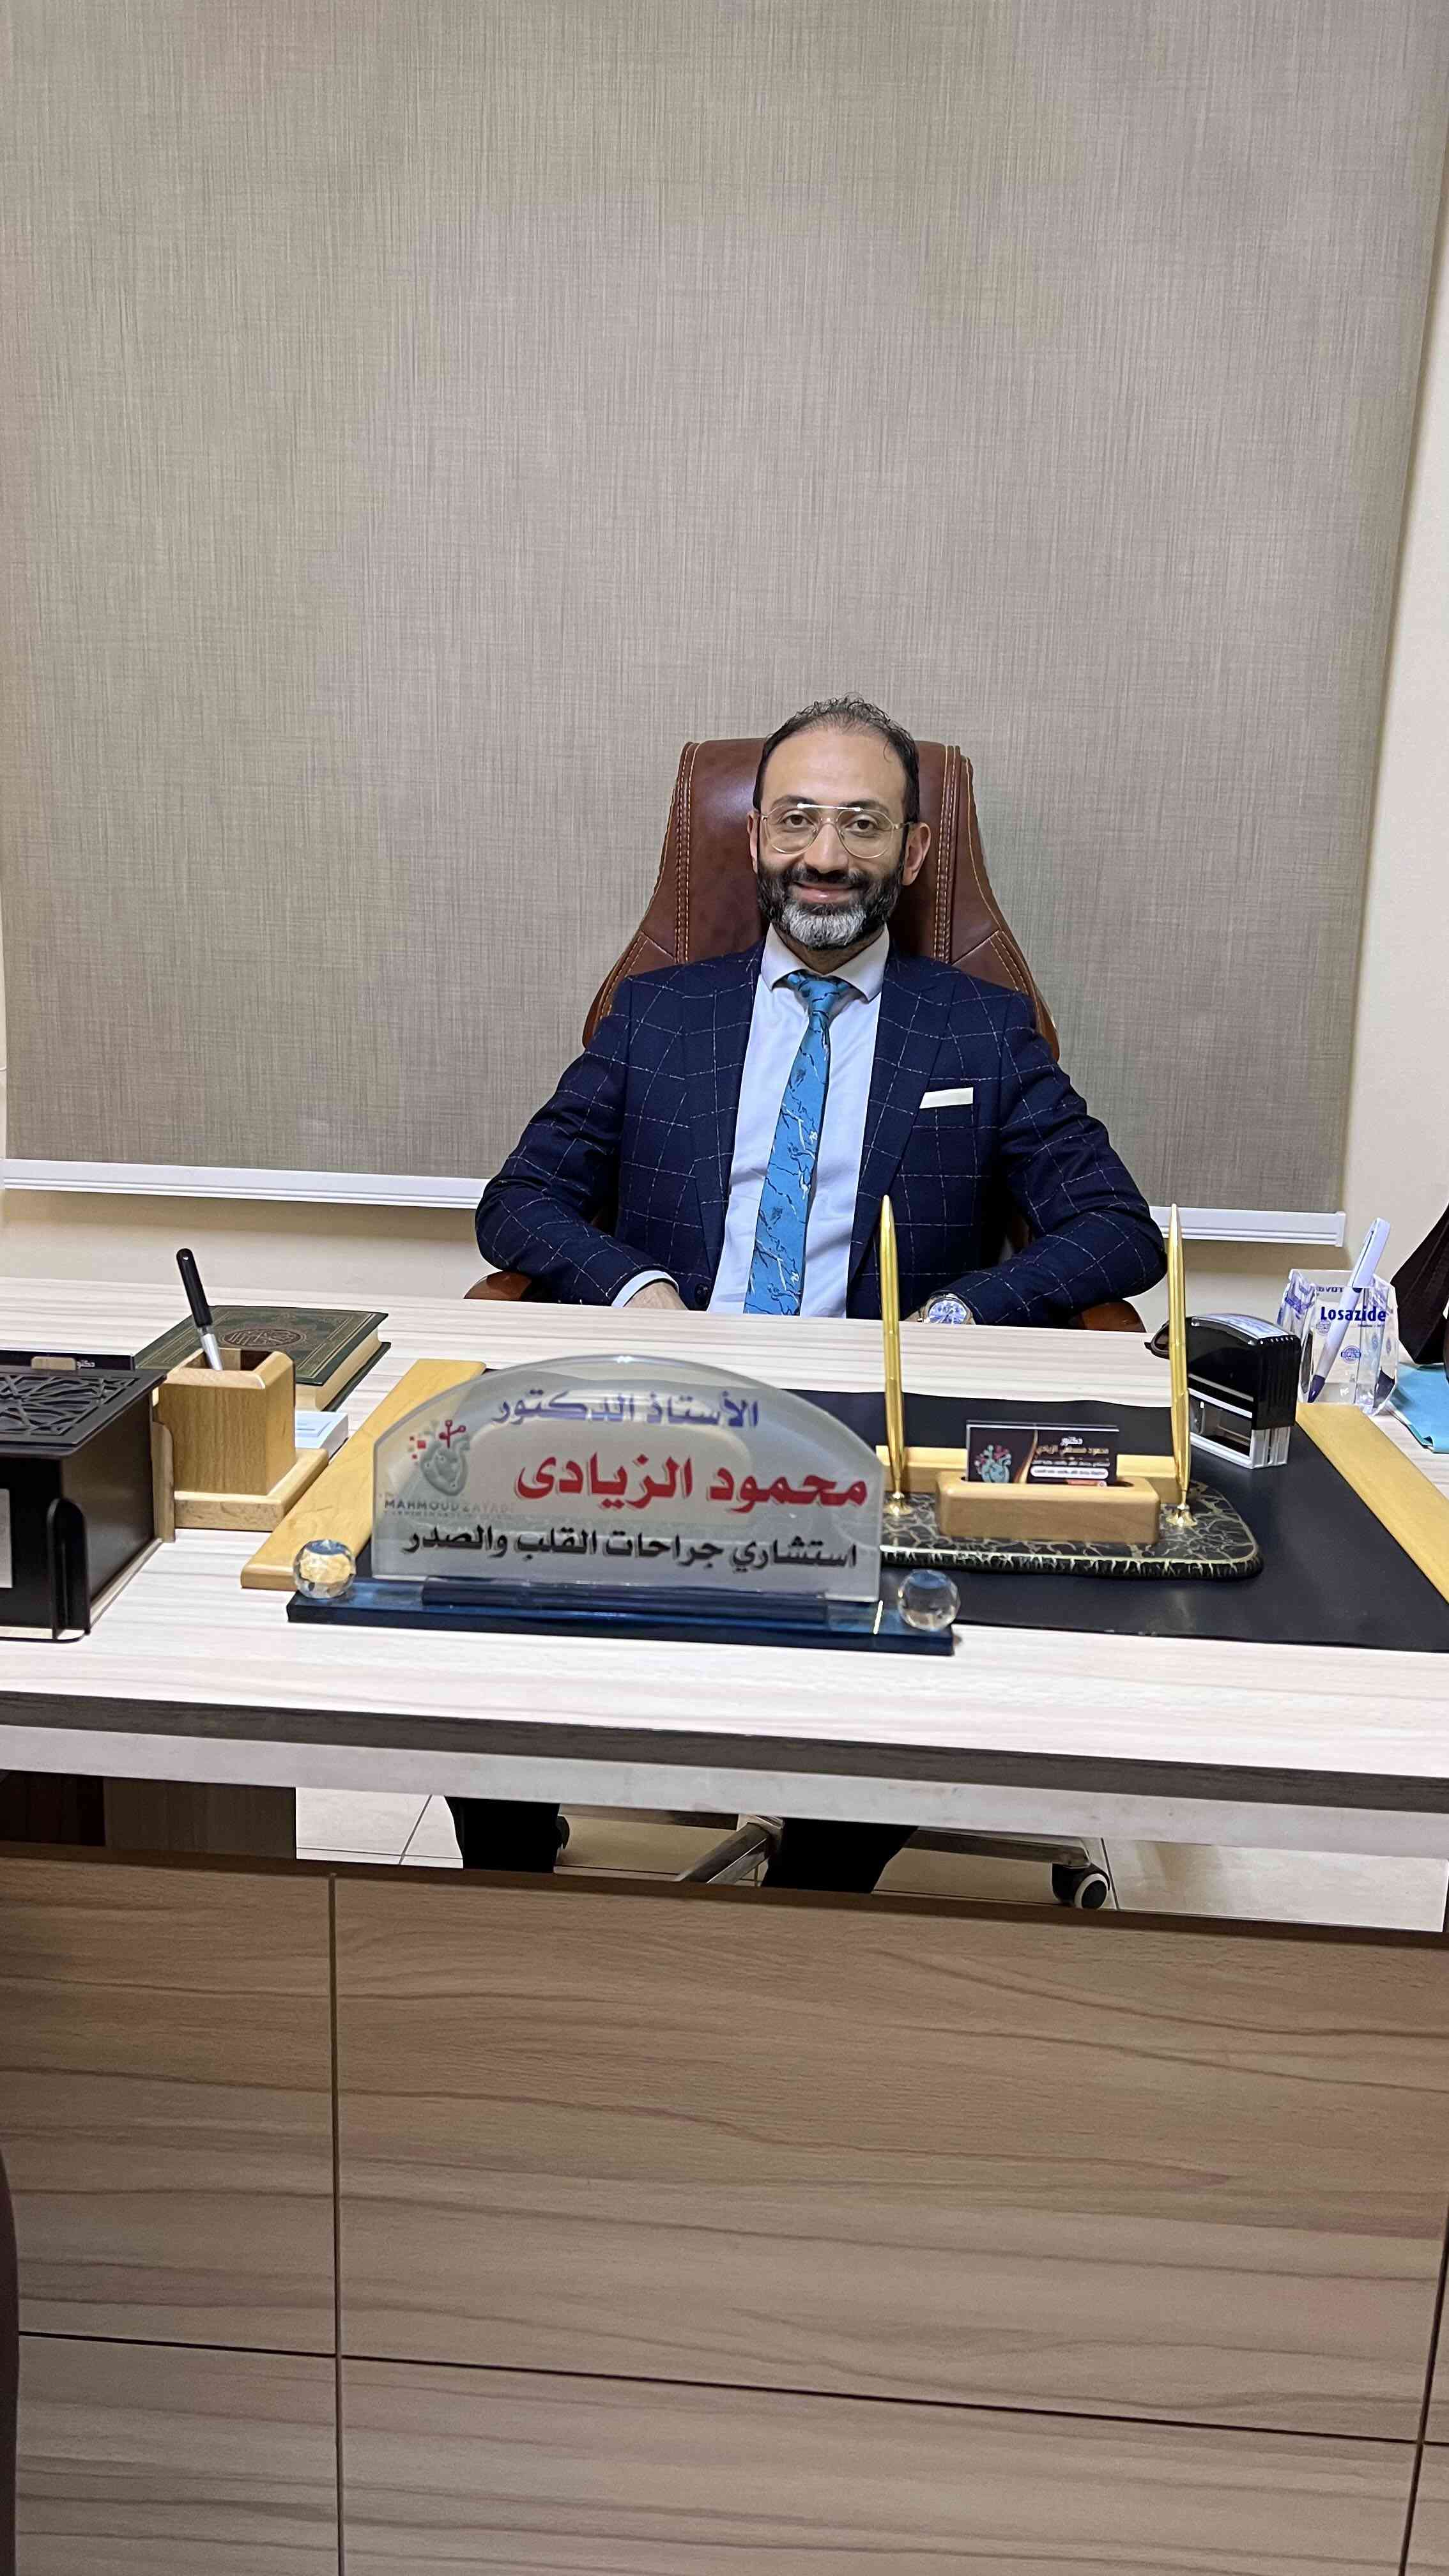 Dr. Mahmoud ElZayadi